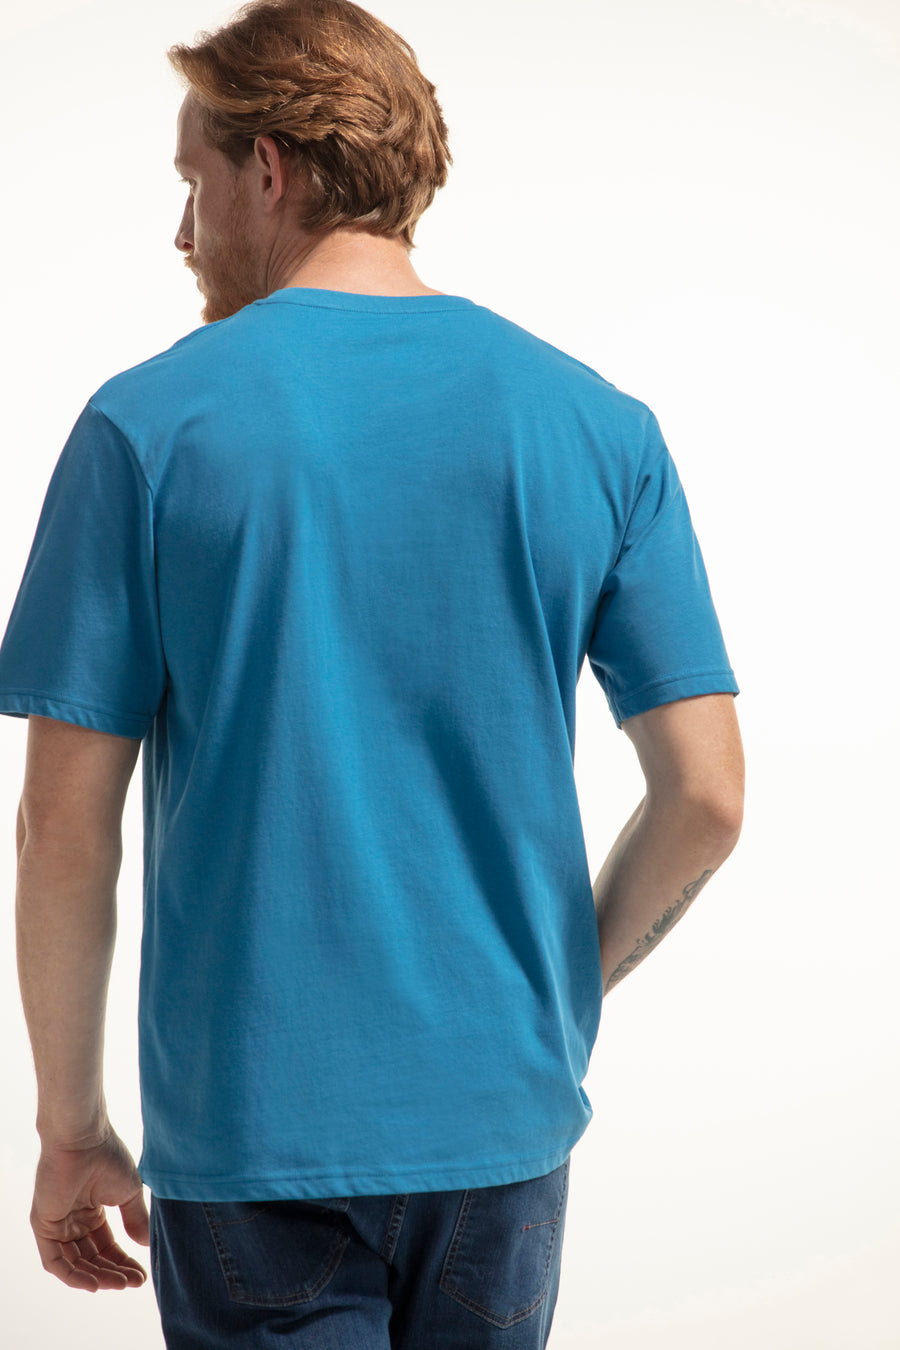 T-shirt com estampado de decote redondo e manga curta.